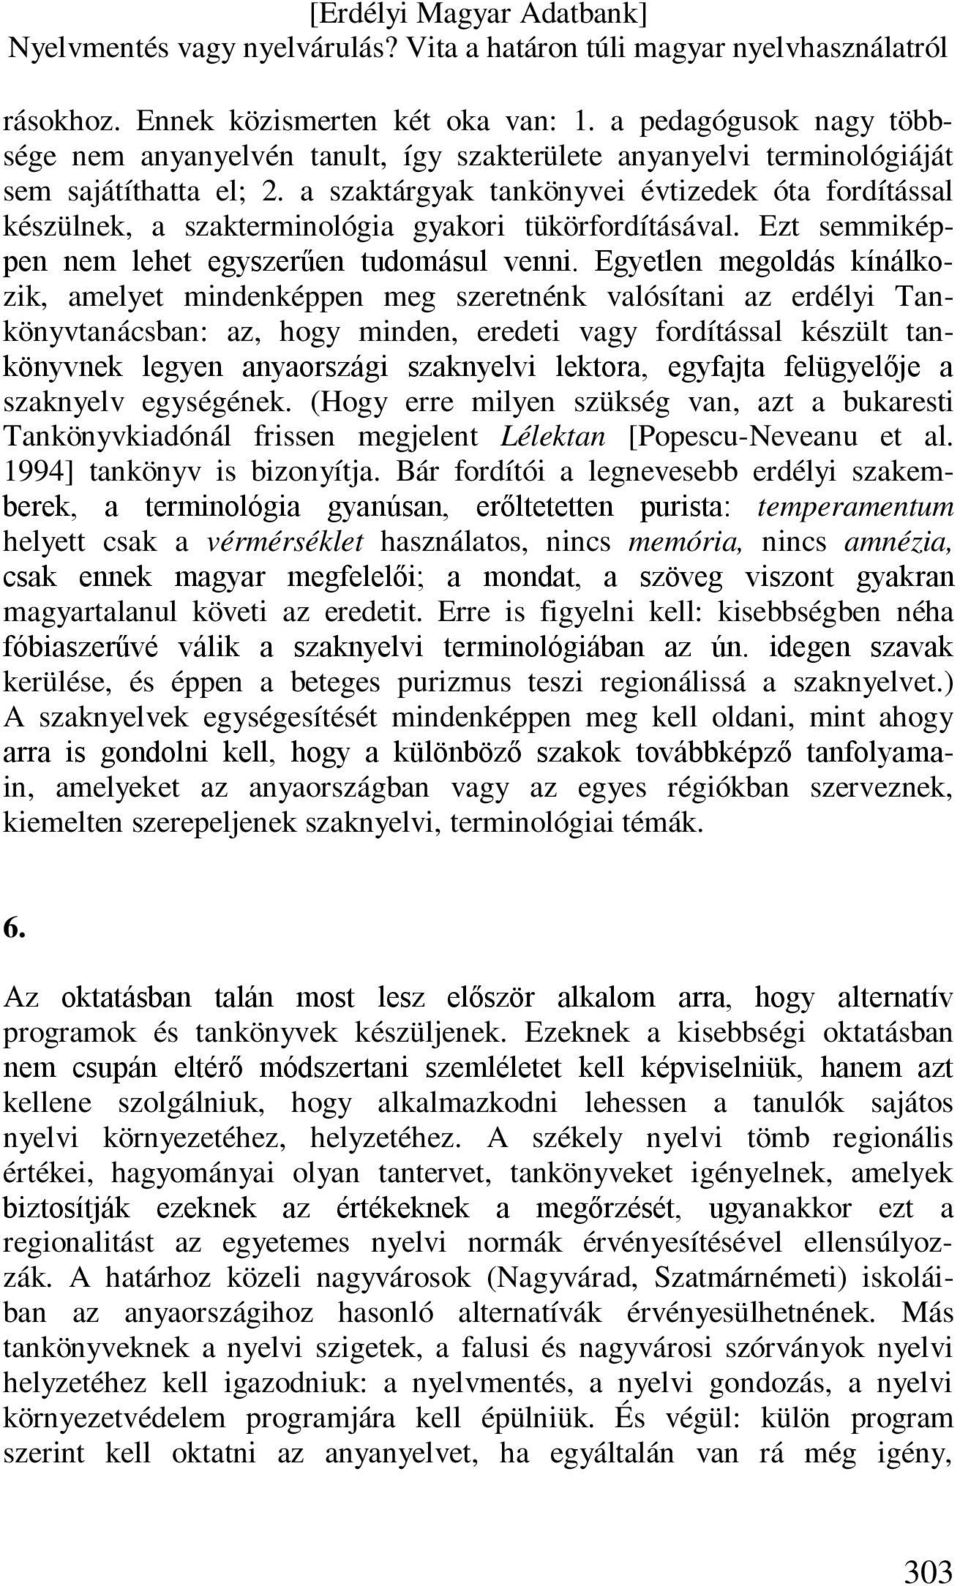 Egyetlen megoldás kínálkozik, amelyet mindenképpen meg szeretnénk valósítani az erdélyi Tankönyvtanácsban: az, hogy minden, eredeti vagy fordítással készült tankönyvnek legyen anyaországi szaknyelvi